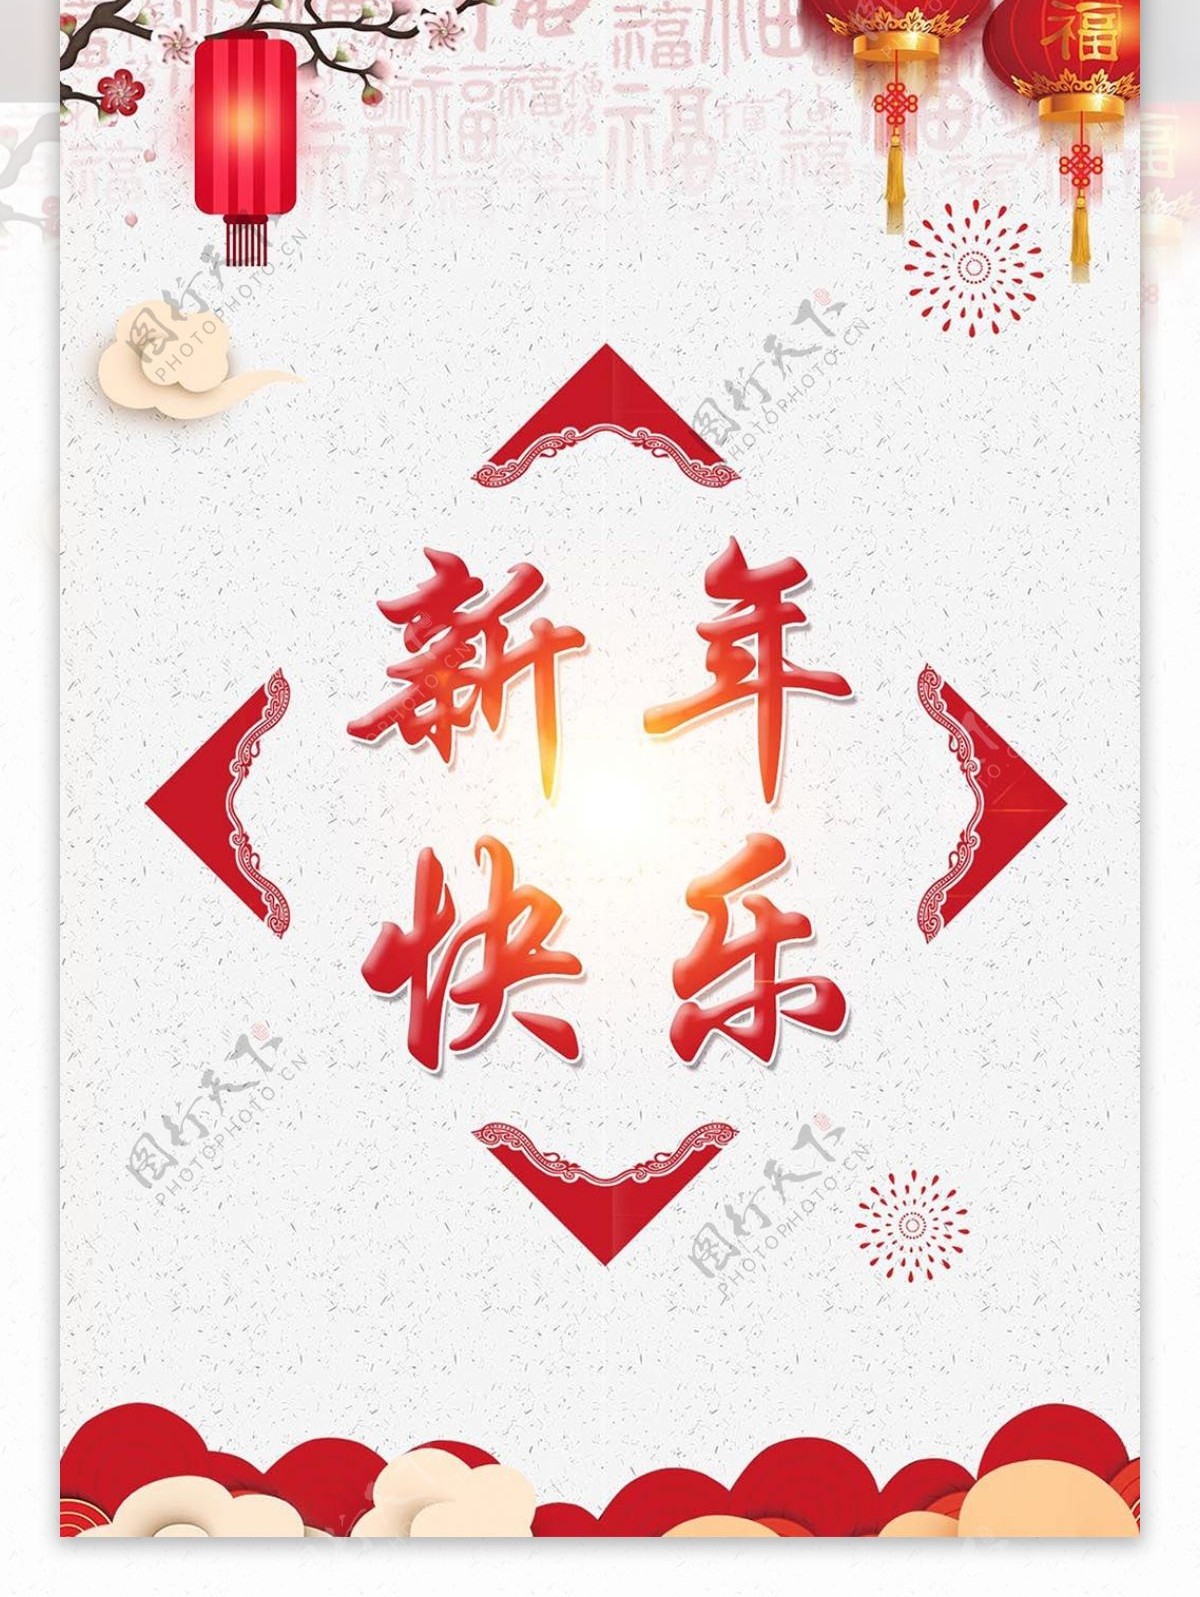 简约大气中国风新年快乐桌卡设计